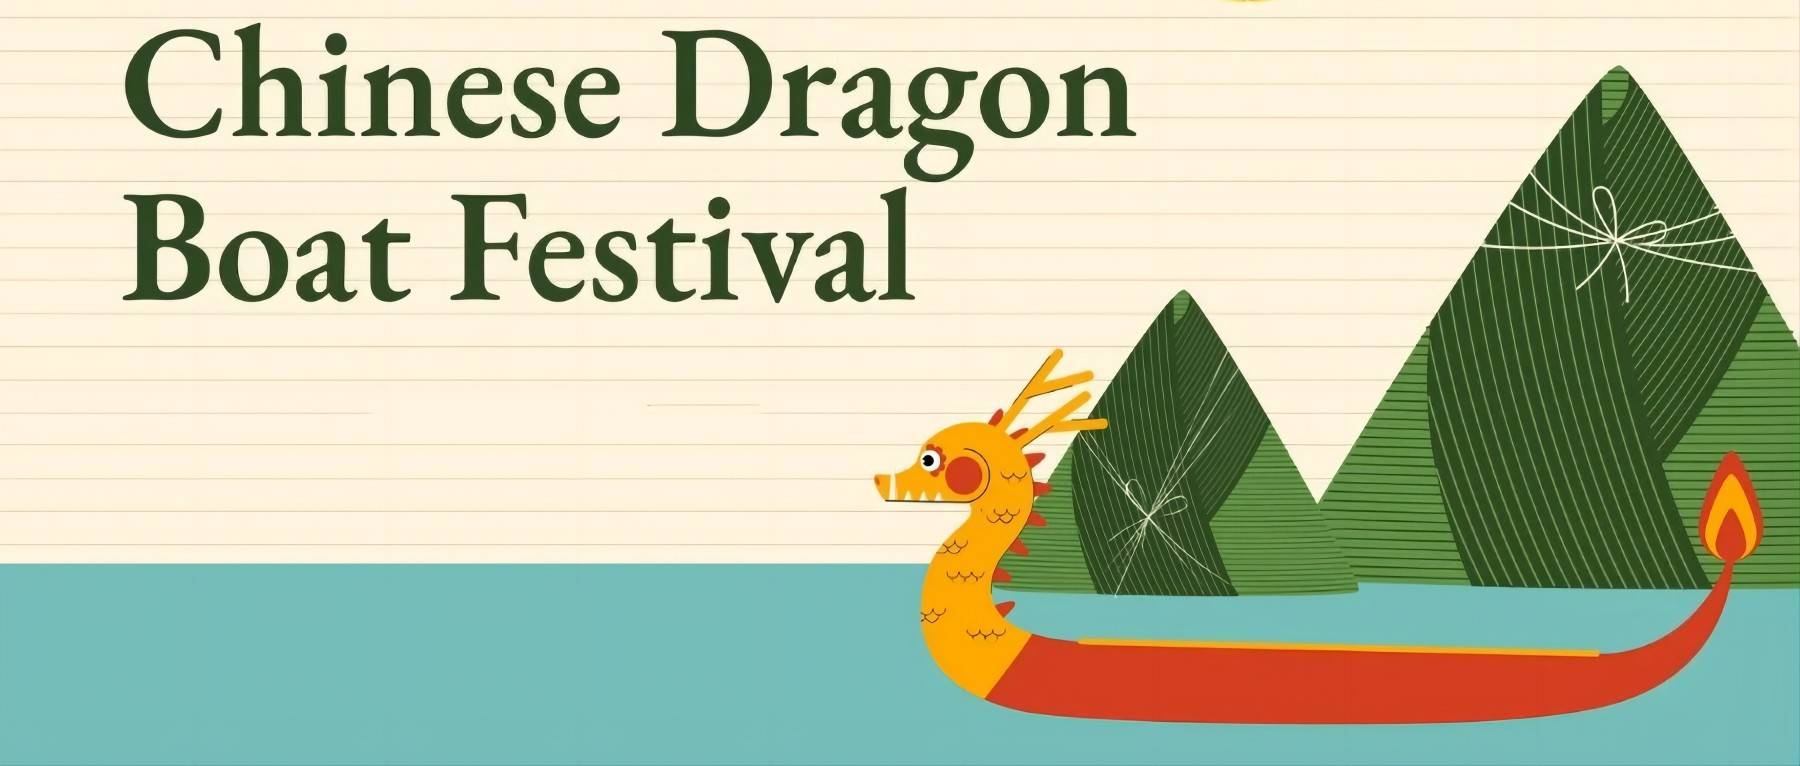 Festival do Barco-Dragão, Zongxiang transbordando